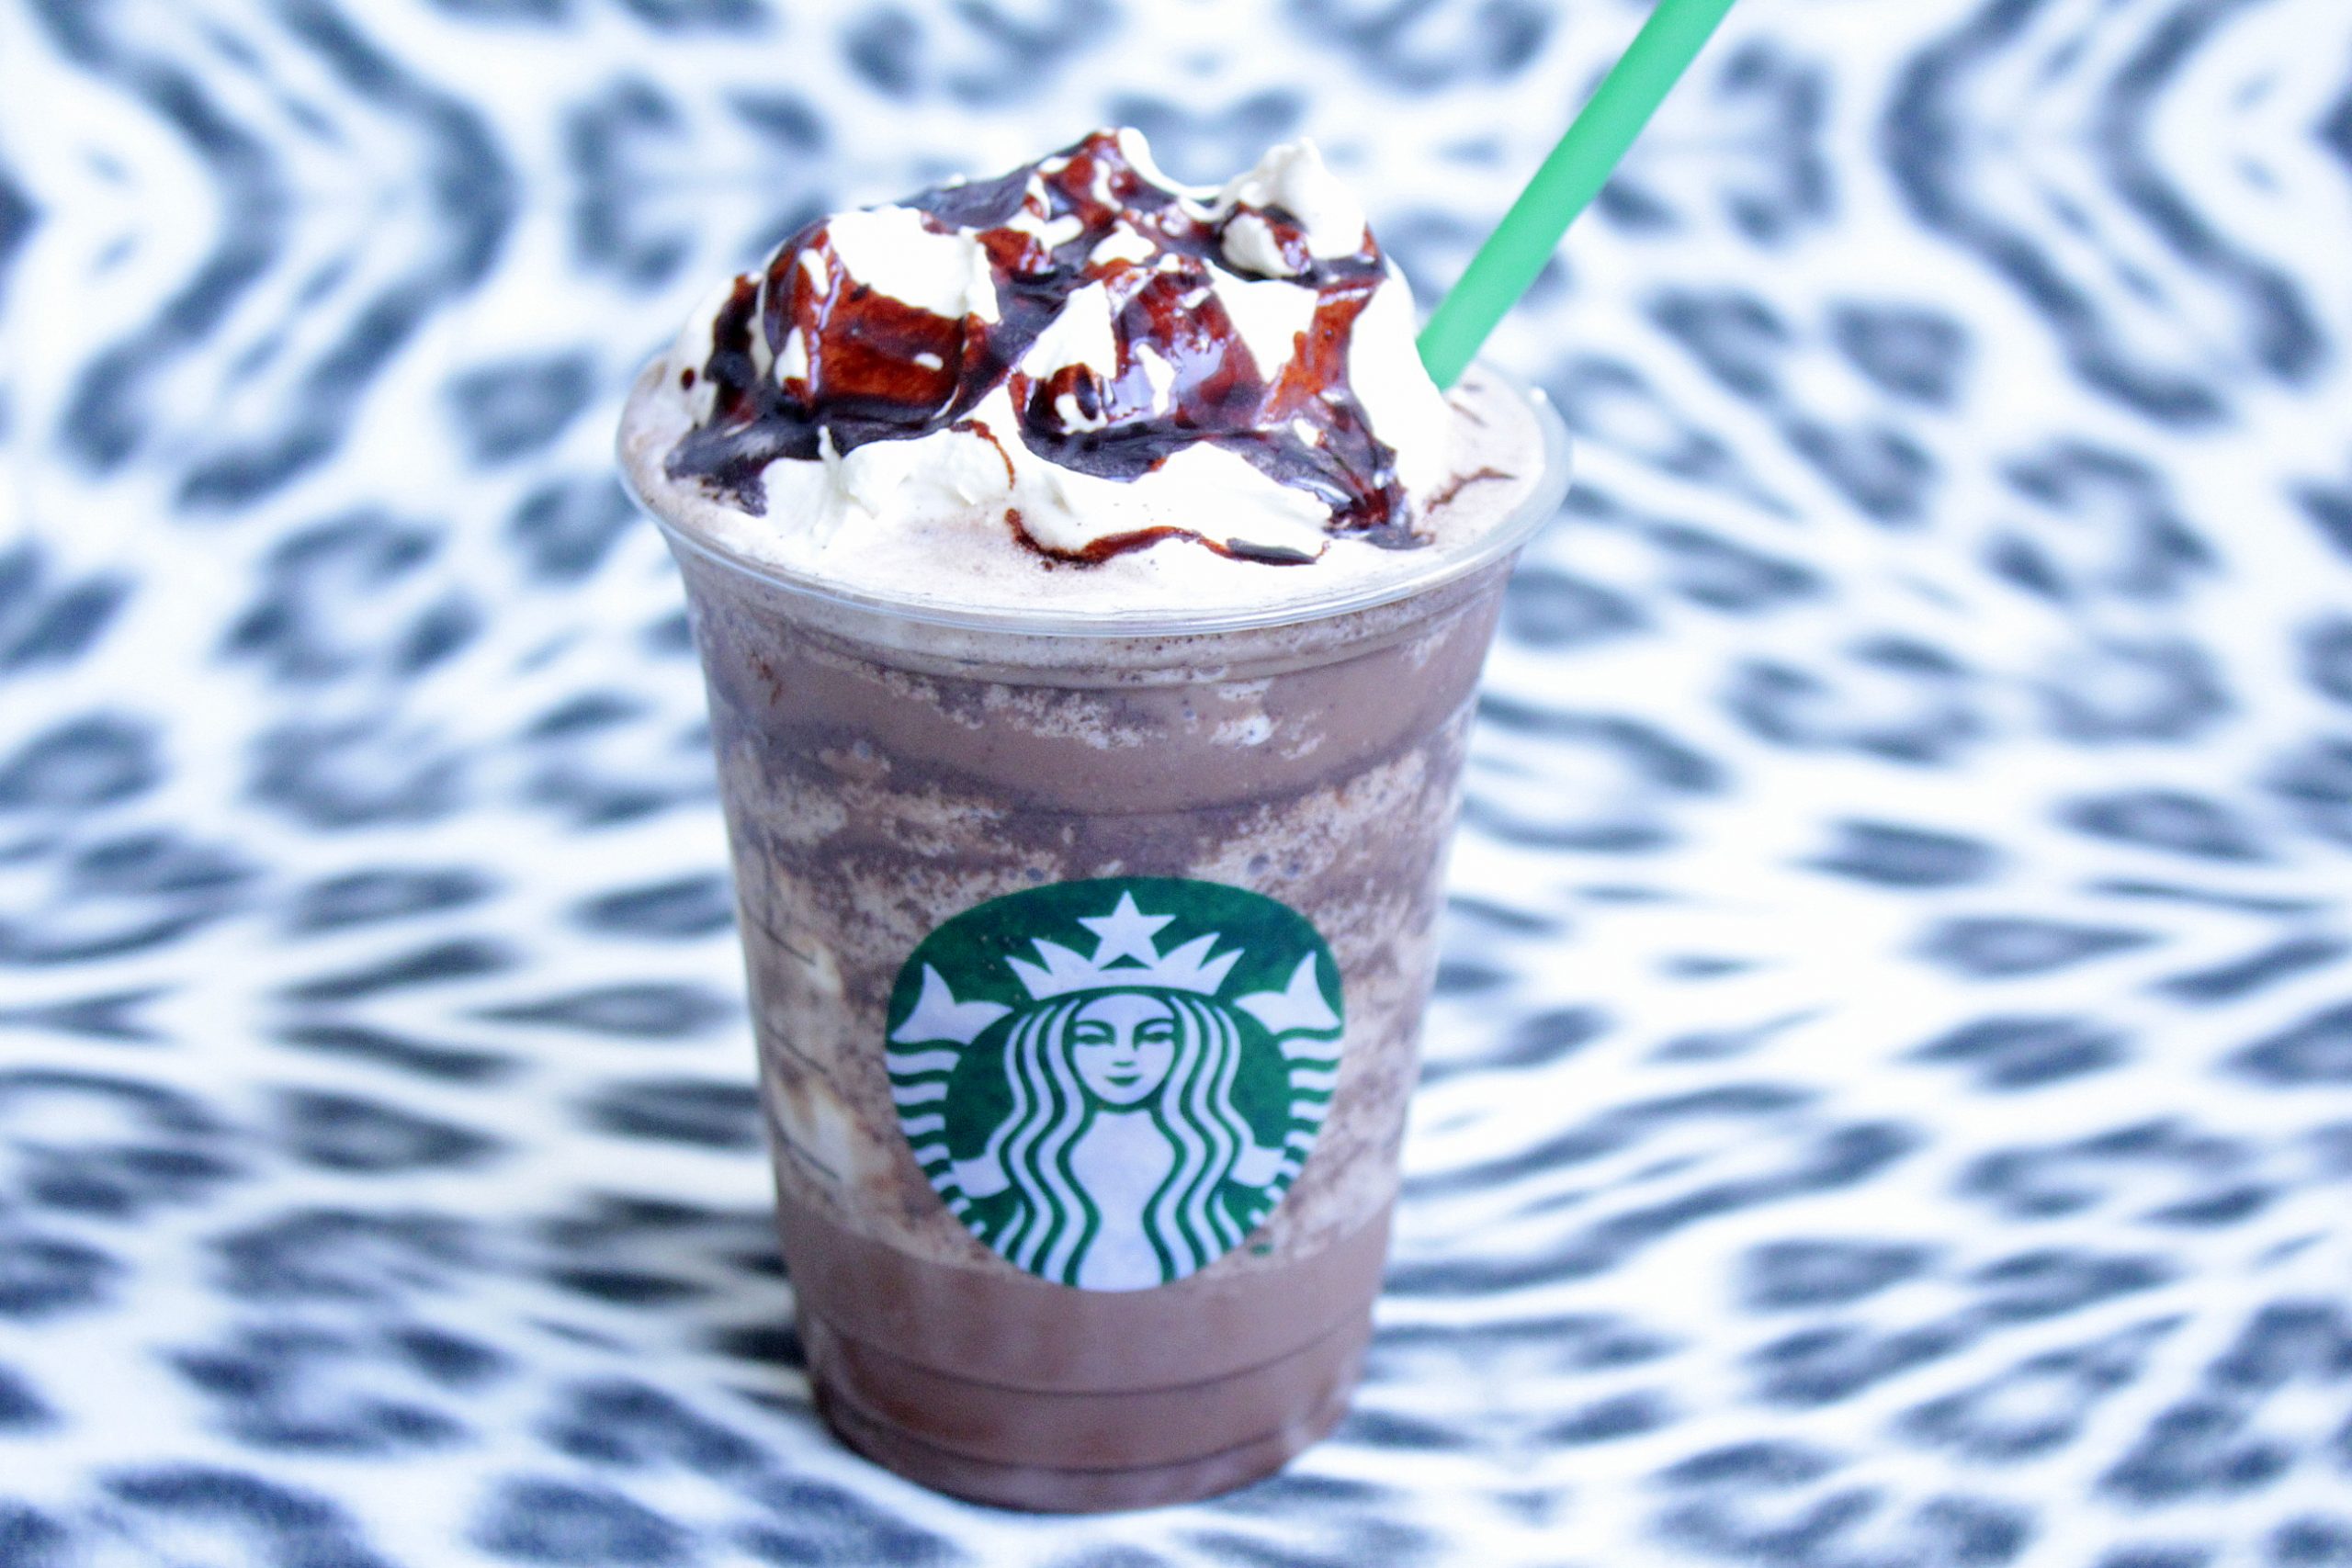 Chocolate chip starbucks Copycat Starbucks